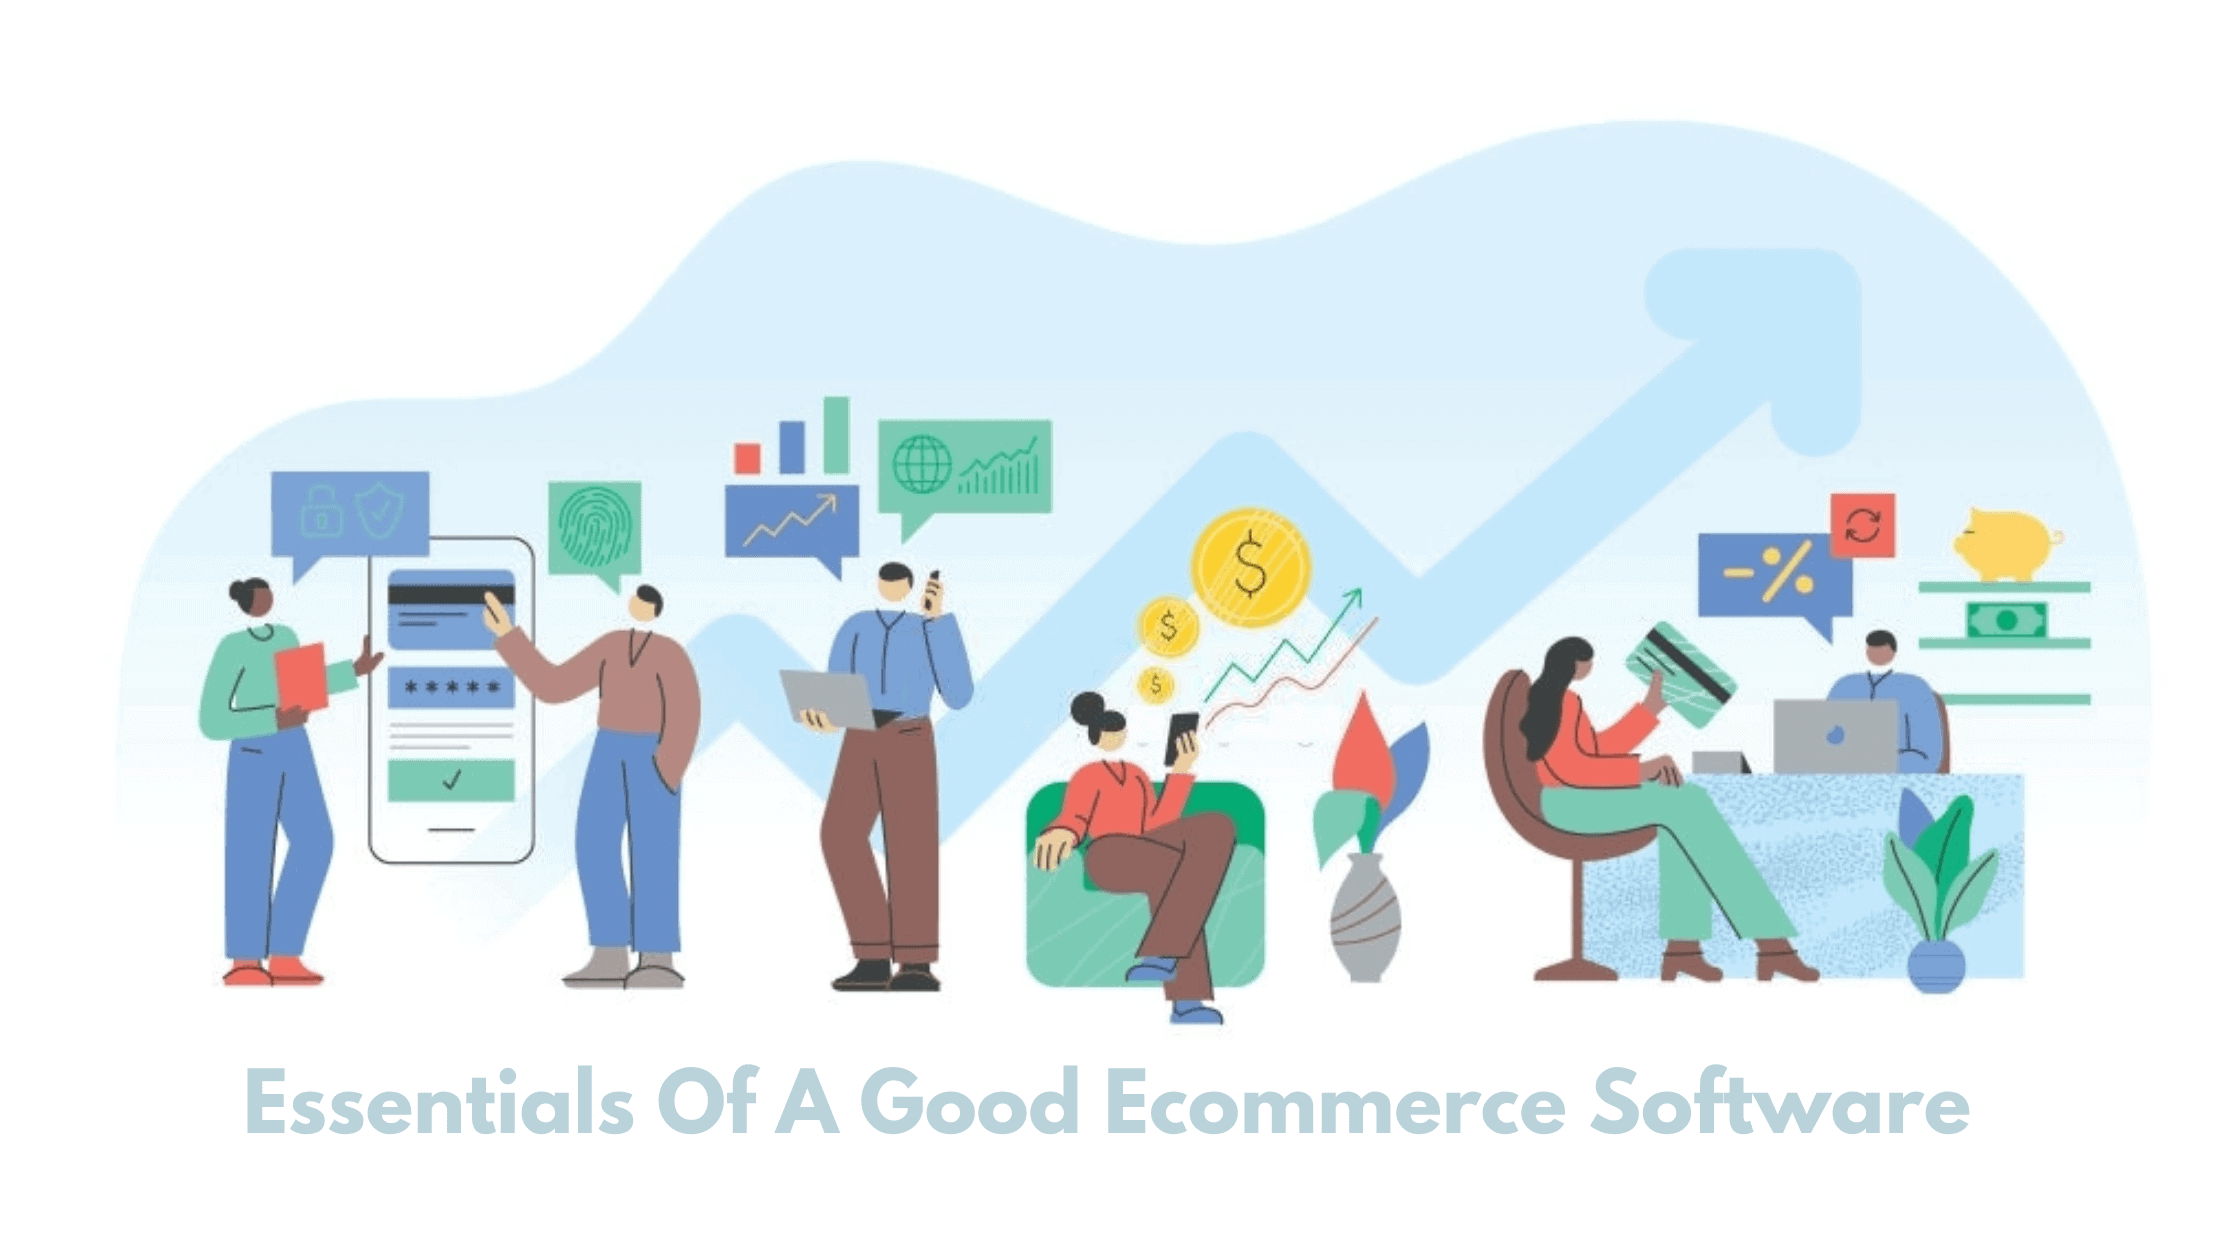 Good Ecommerce Software Essentials